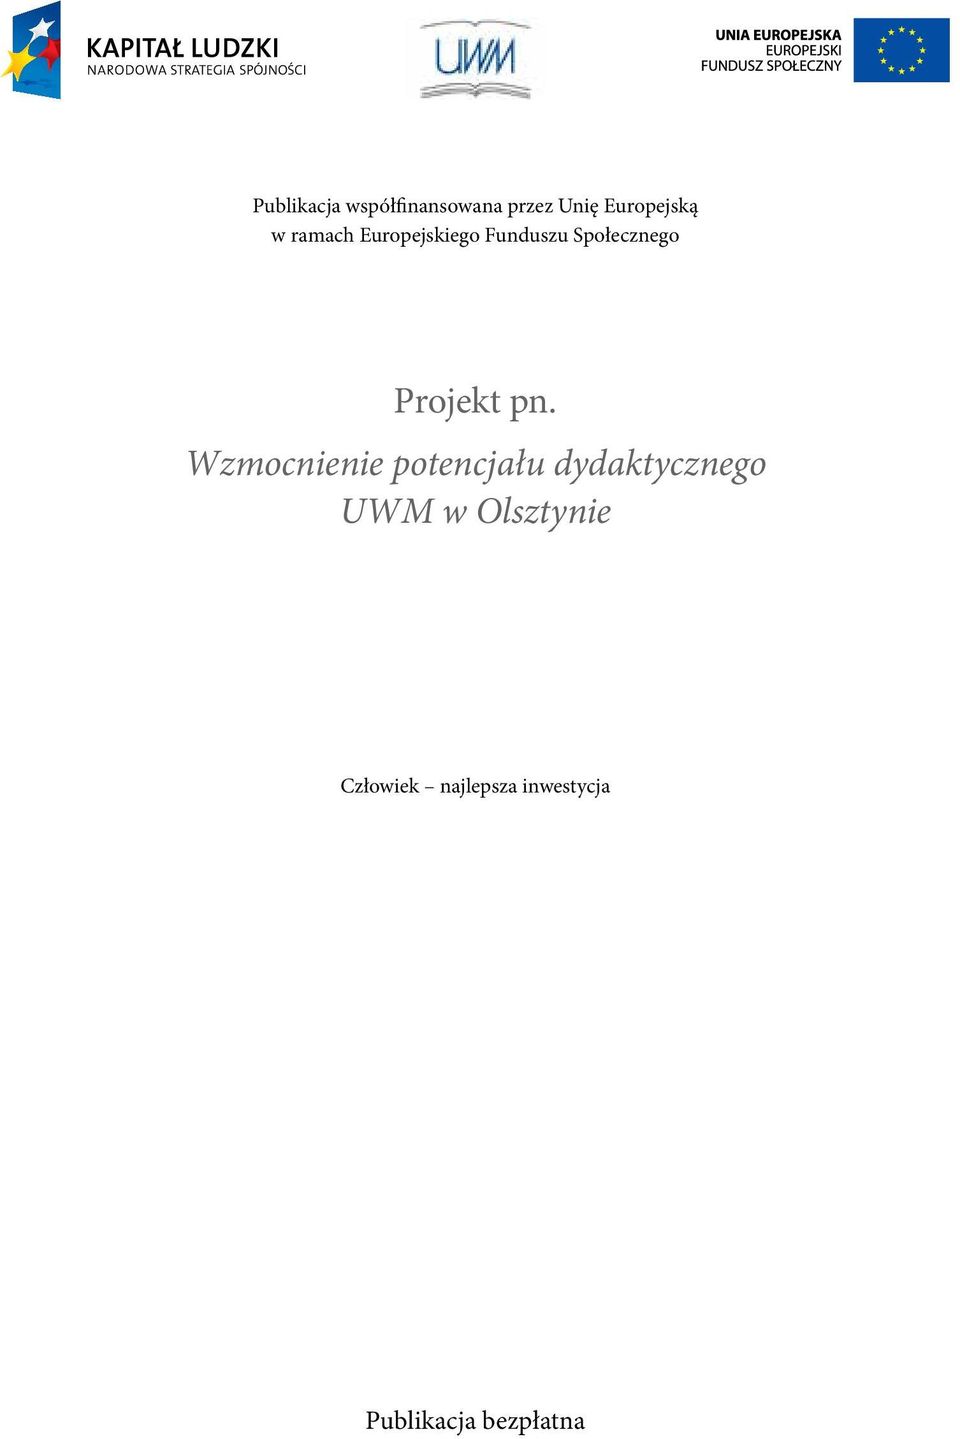 Wzmocnienie potencjału dydaktycznego UWM w Olsztynie